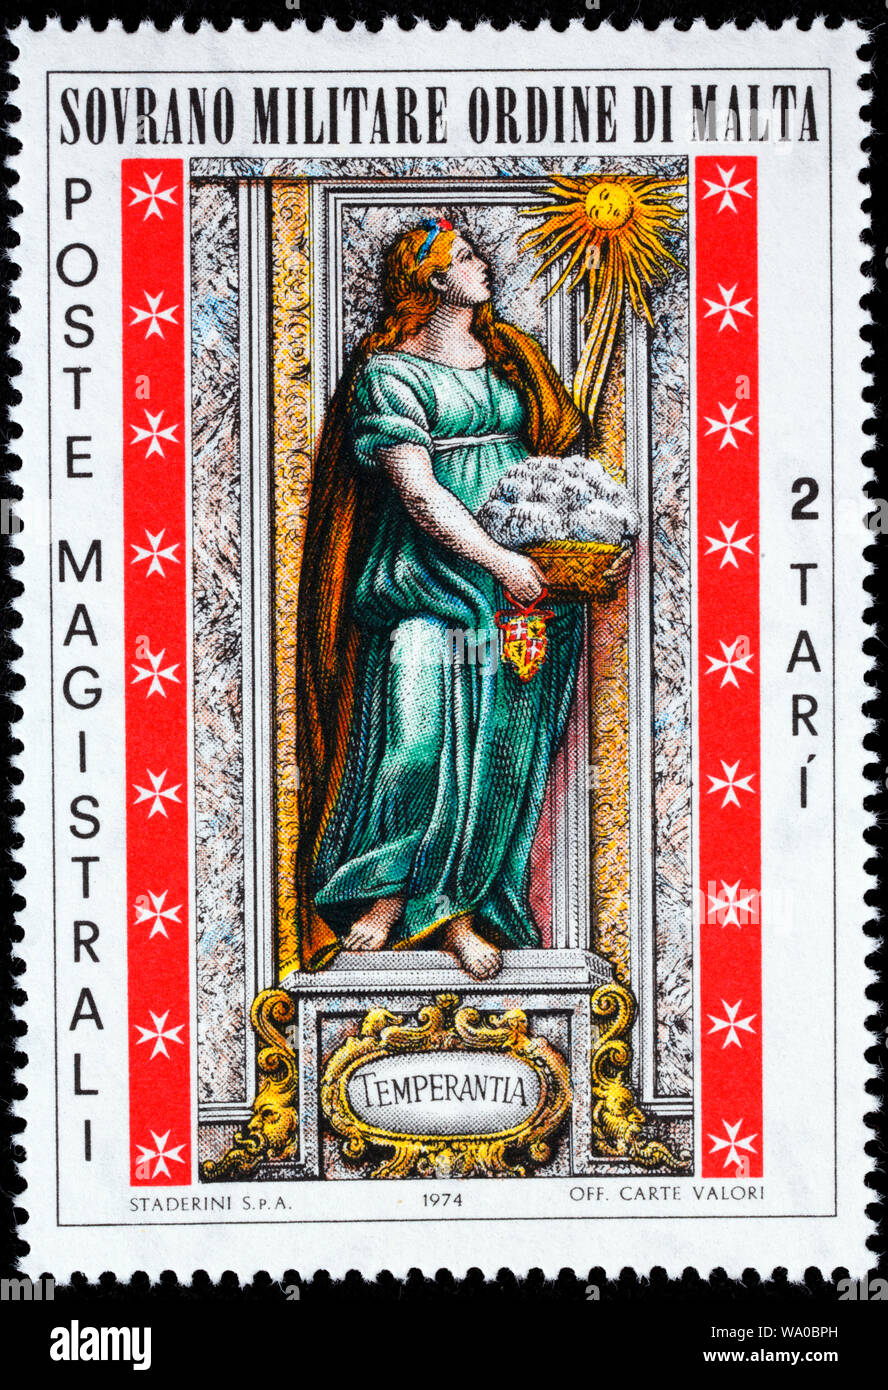 La temperanza, virt cardinali, francobollo, il Sovrano Militare Ordine di Malta, 1974 Foto Stock